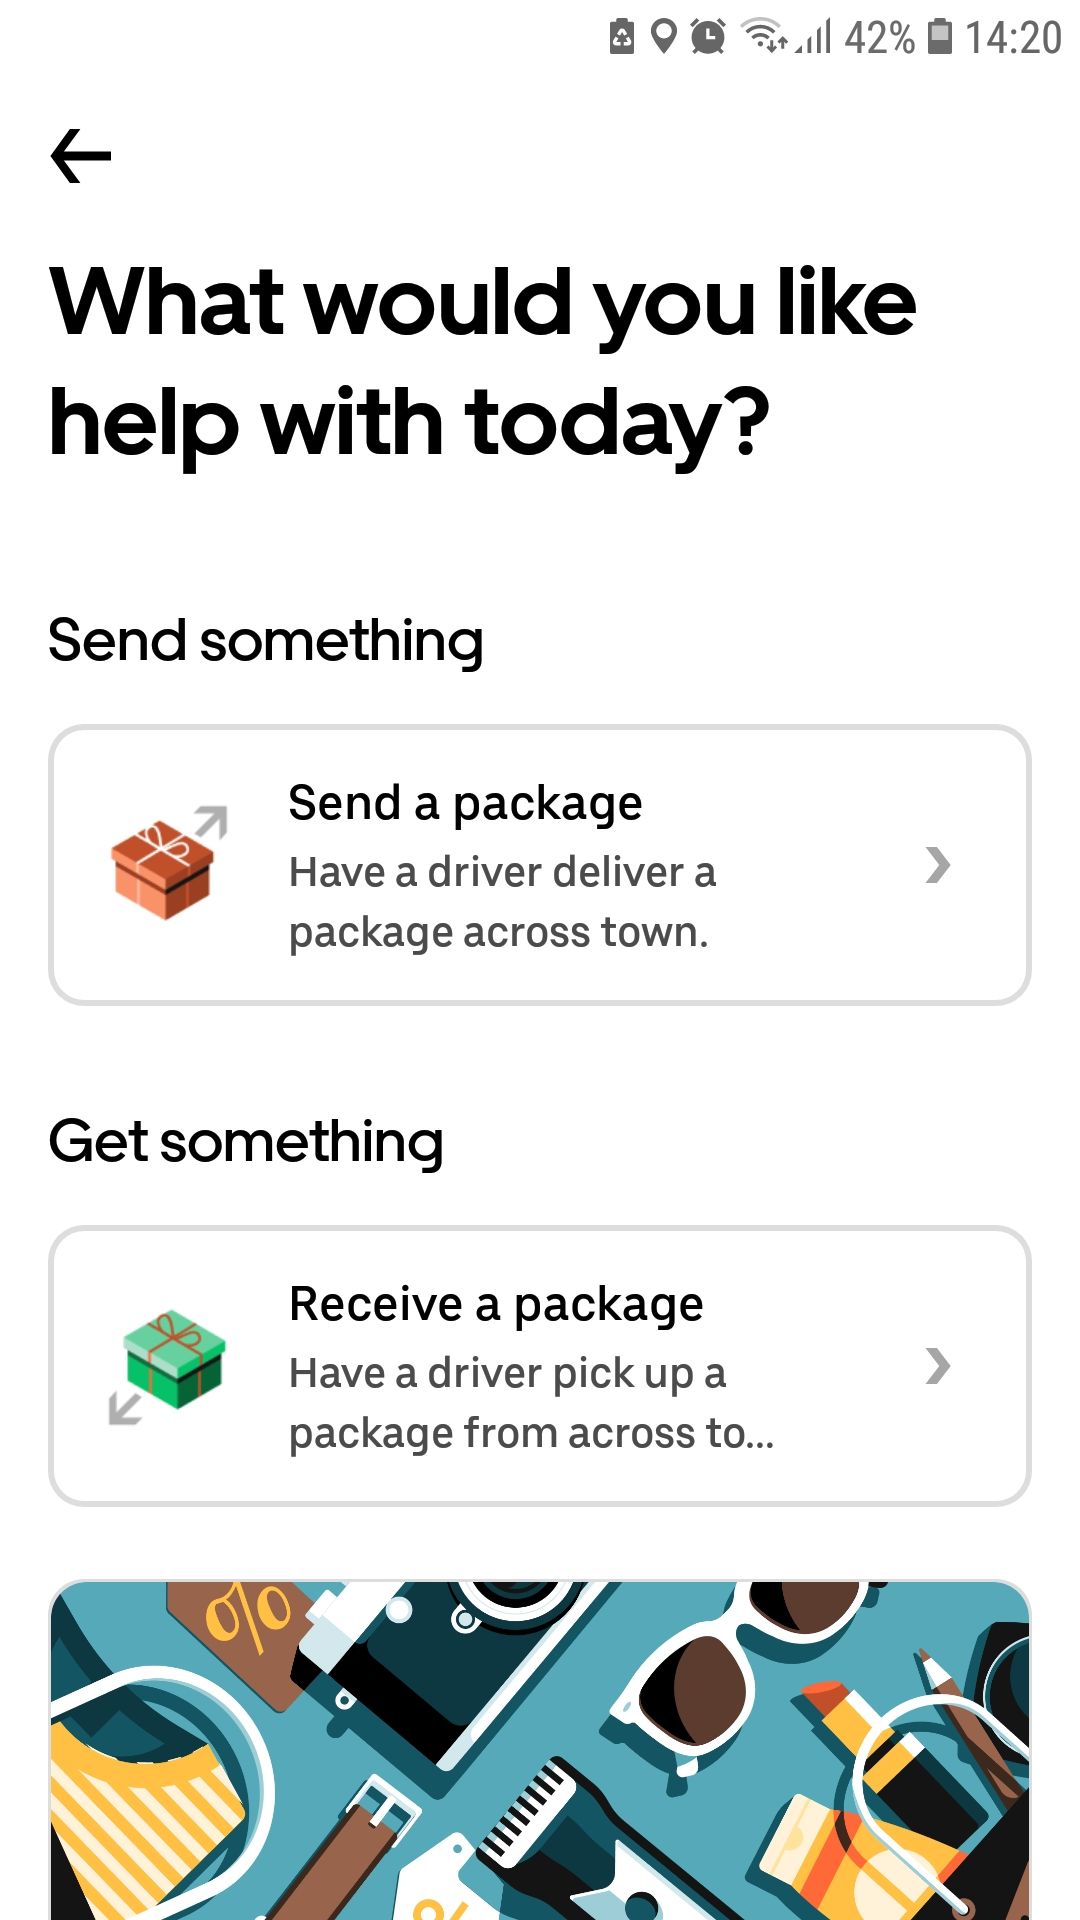 Livraison de colis d'application mobile Uber